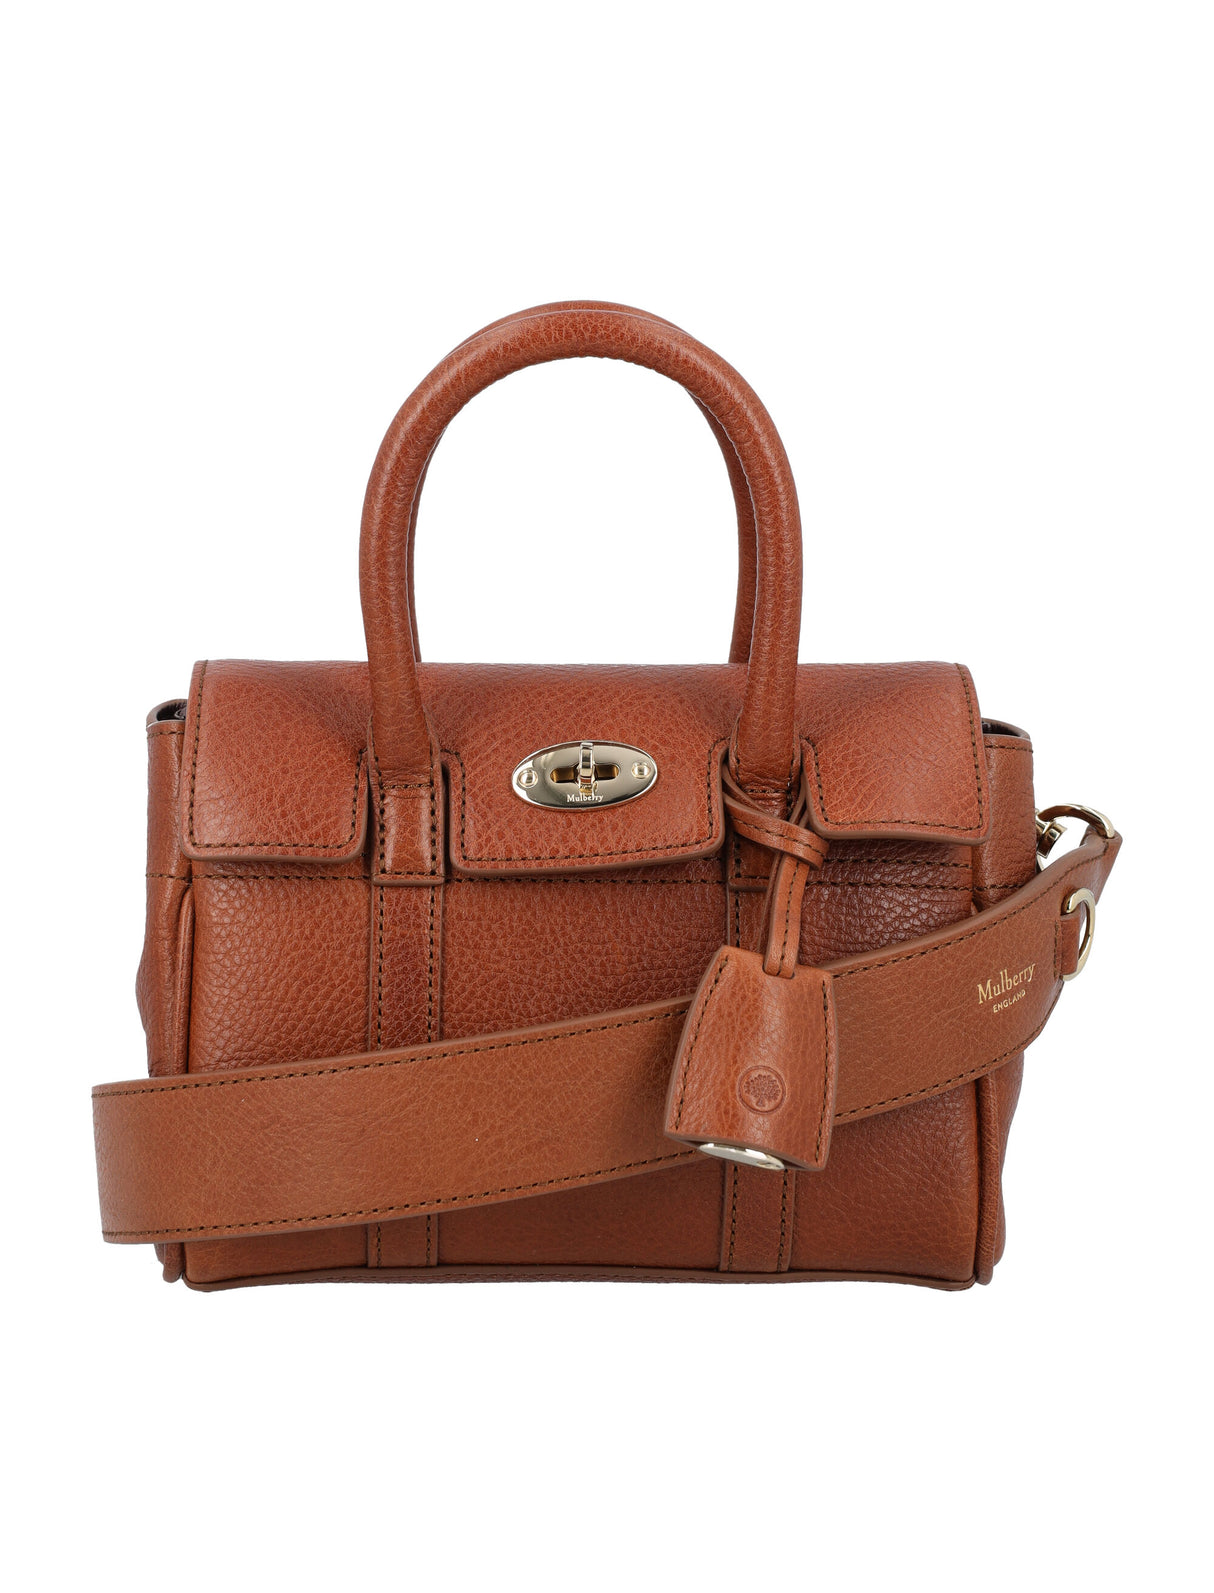 حقيبة يد ميني بايسووتر من الجلد بلون بني مع حزام كتف وتفاصيل ذهبية - 18.5 سم عرض x 12.5 سم ارتفاع x 8 سم عمق